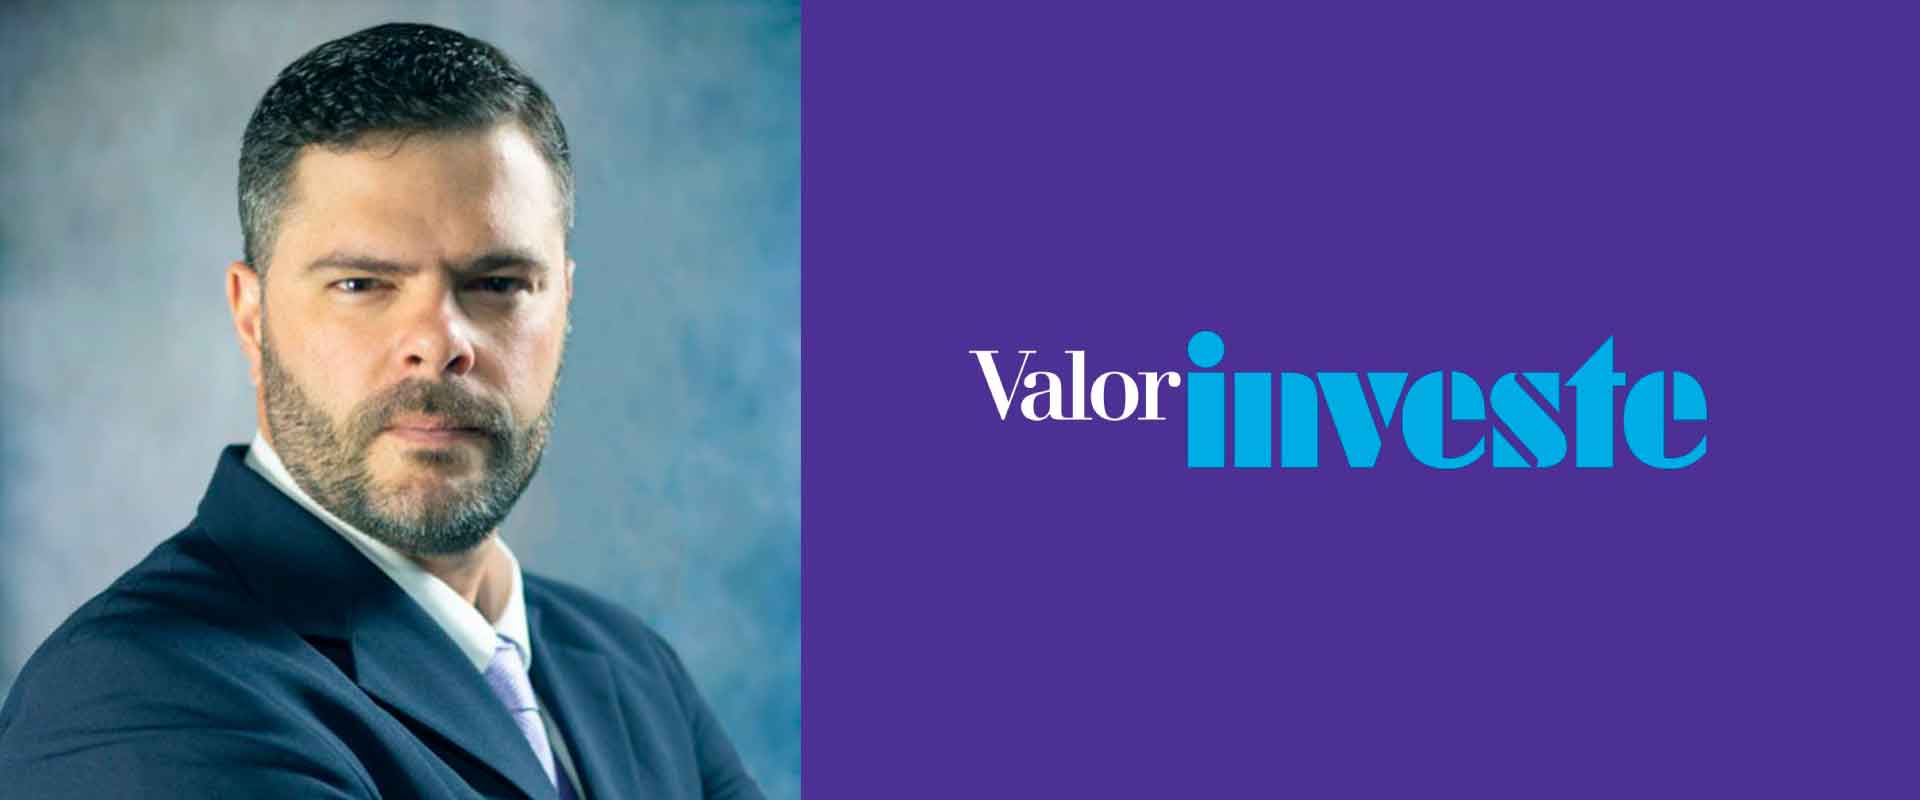 Em sua coluna no Valor Investe, o professor de Finanças do Coppead/UFRJ, Carlos Heitor, analisou a volatilidade em alta causada pelo cenário externo.